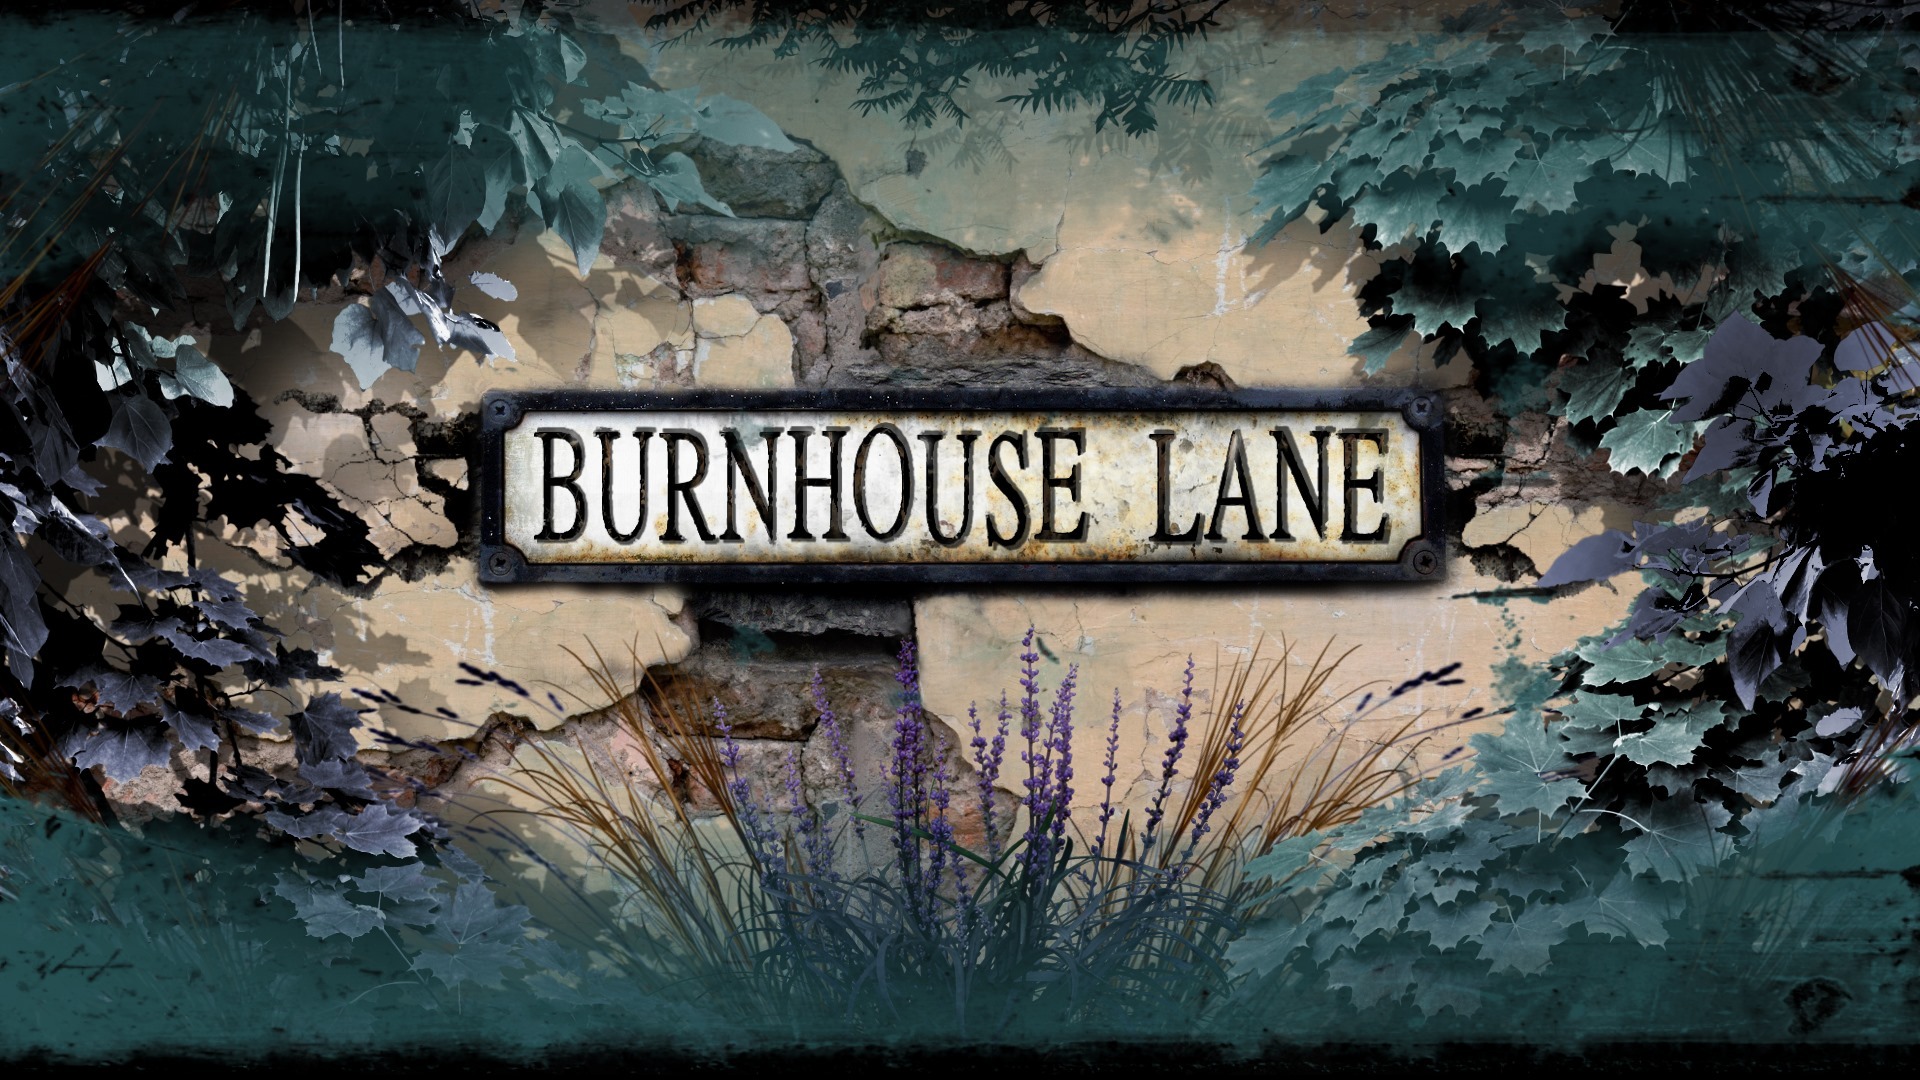 burnhouse lane voice actors download free